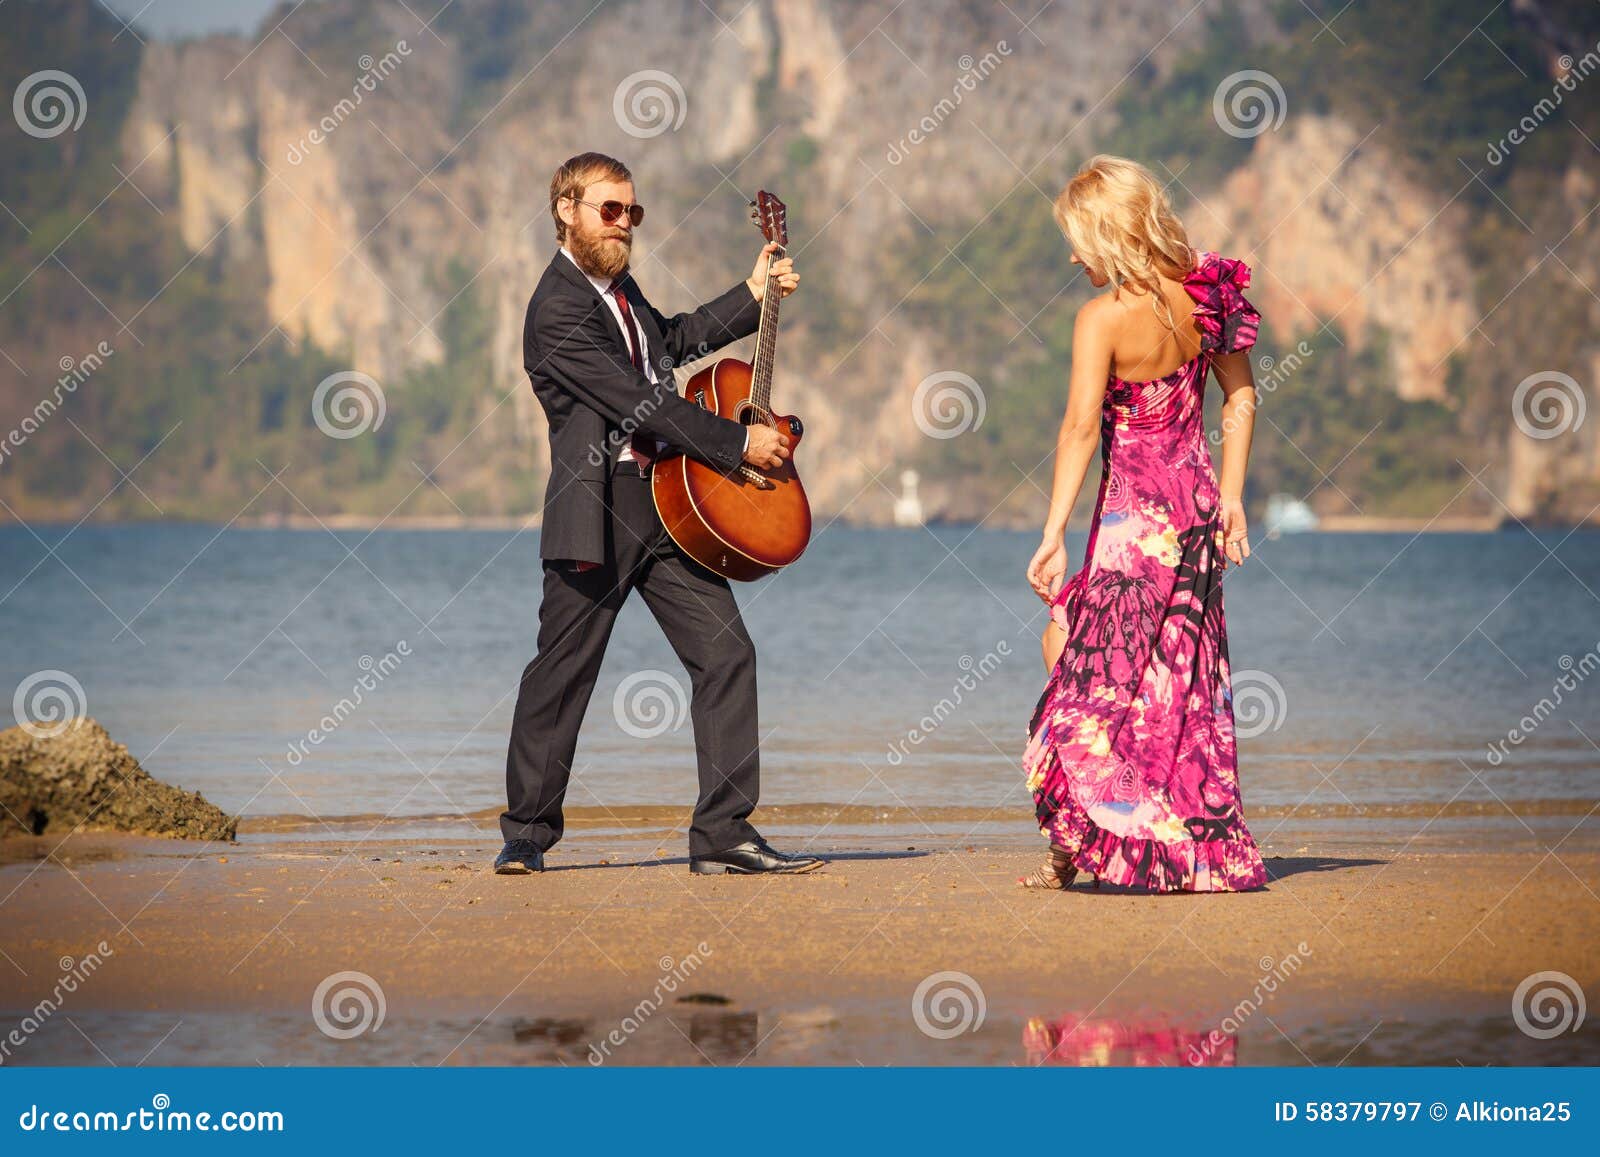 Πίσω-άποψη και κιθαρίστας χορού ξανθή στην παραλία. Χορεύοντας ξανθό κορίτσι κατά την υψηλή πίσω-άποψη παπουτσιών τακουνιών και γενειοφόρος κιθαρίστας στην παραλία at low tide ενάντια στη θάλασσα και το νησί